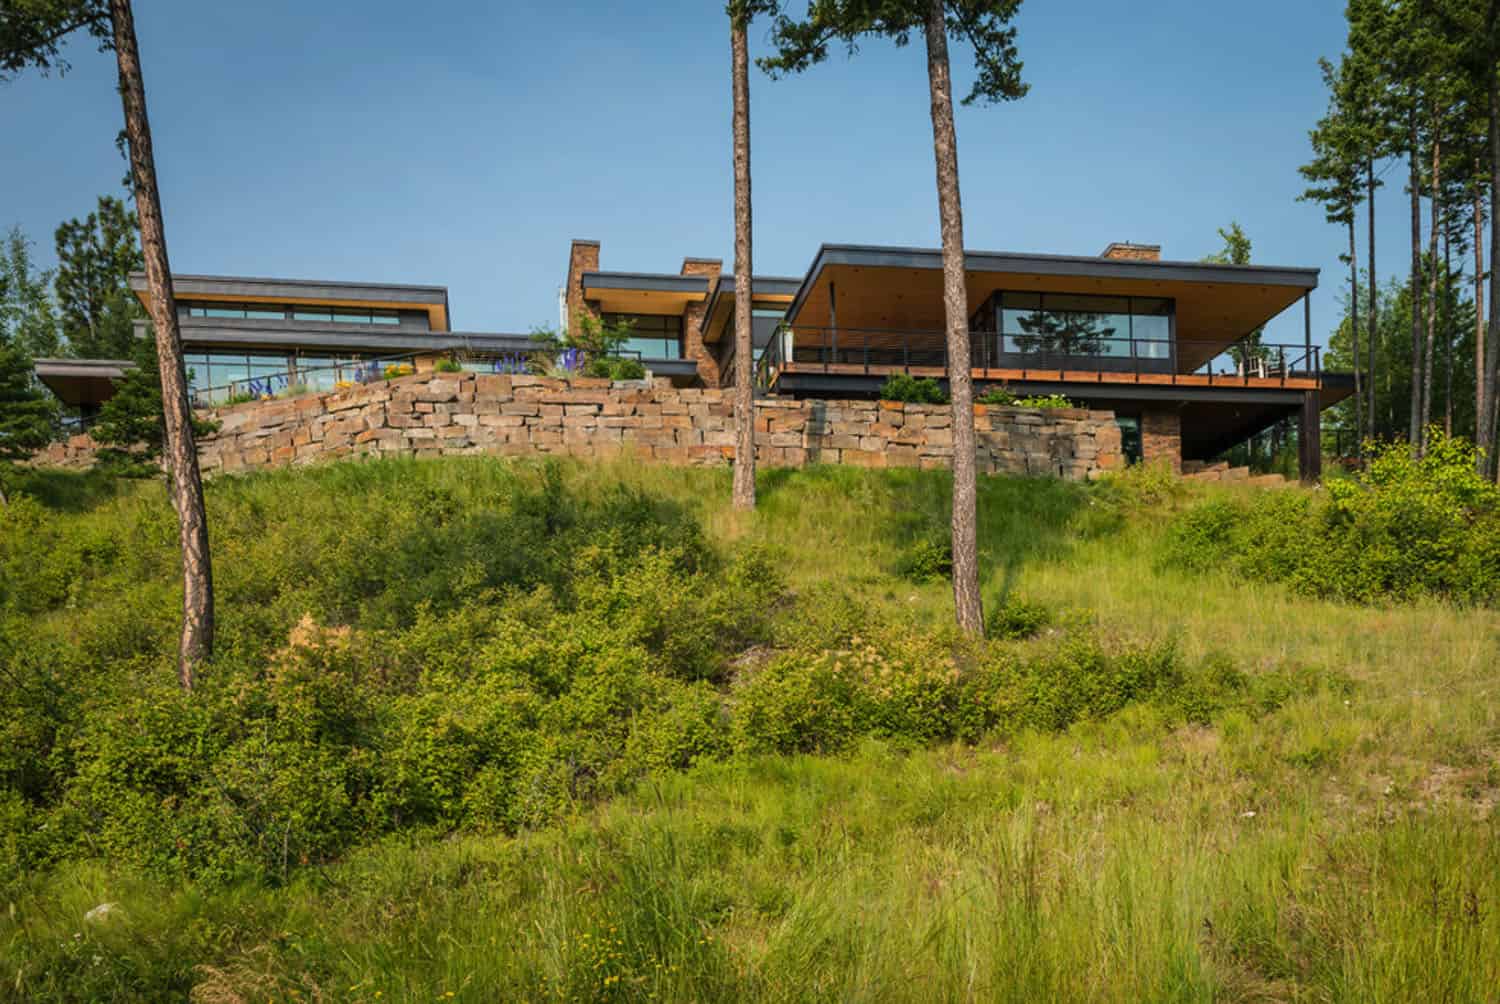 contemporary-mountain-residence-exterior